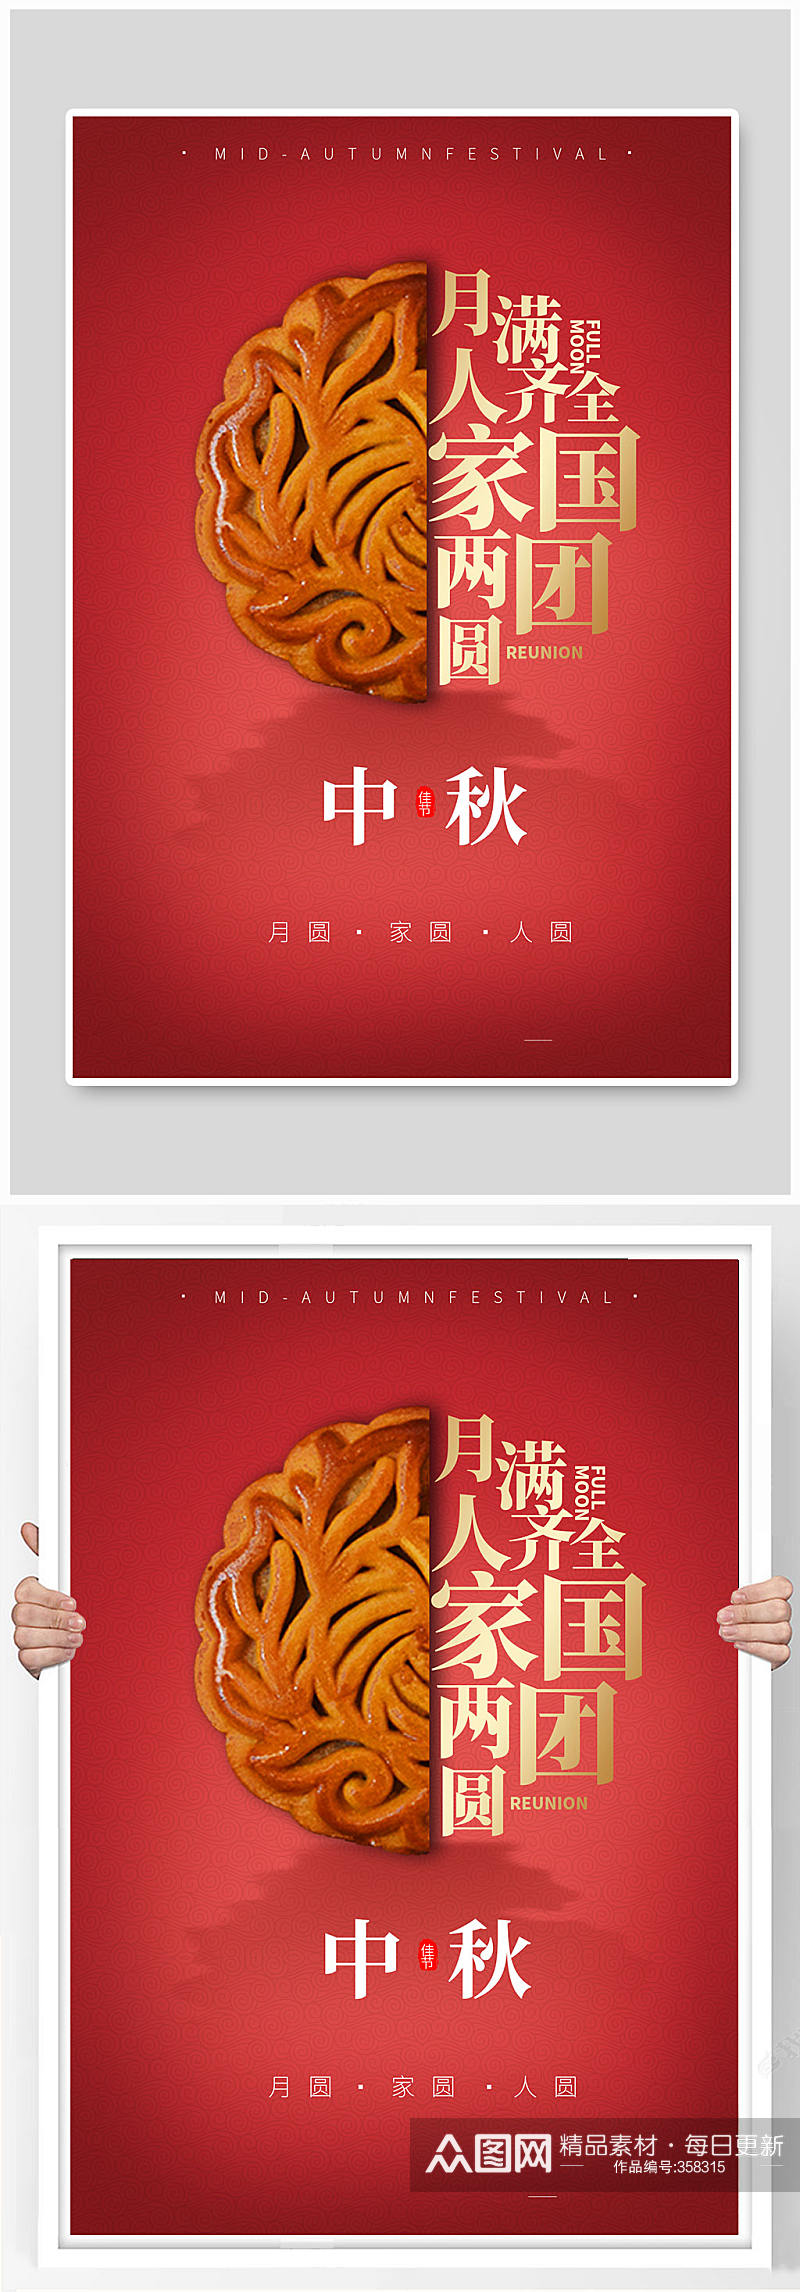 中秋节宣传系列海报素材